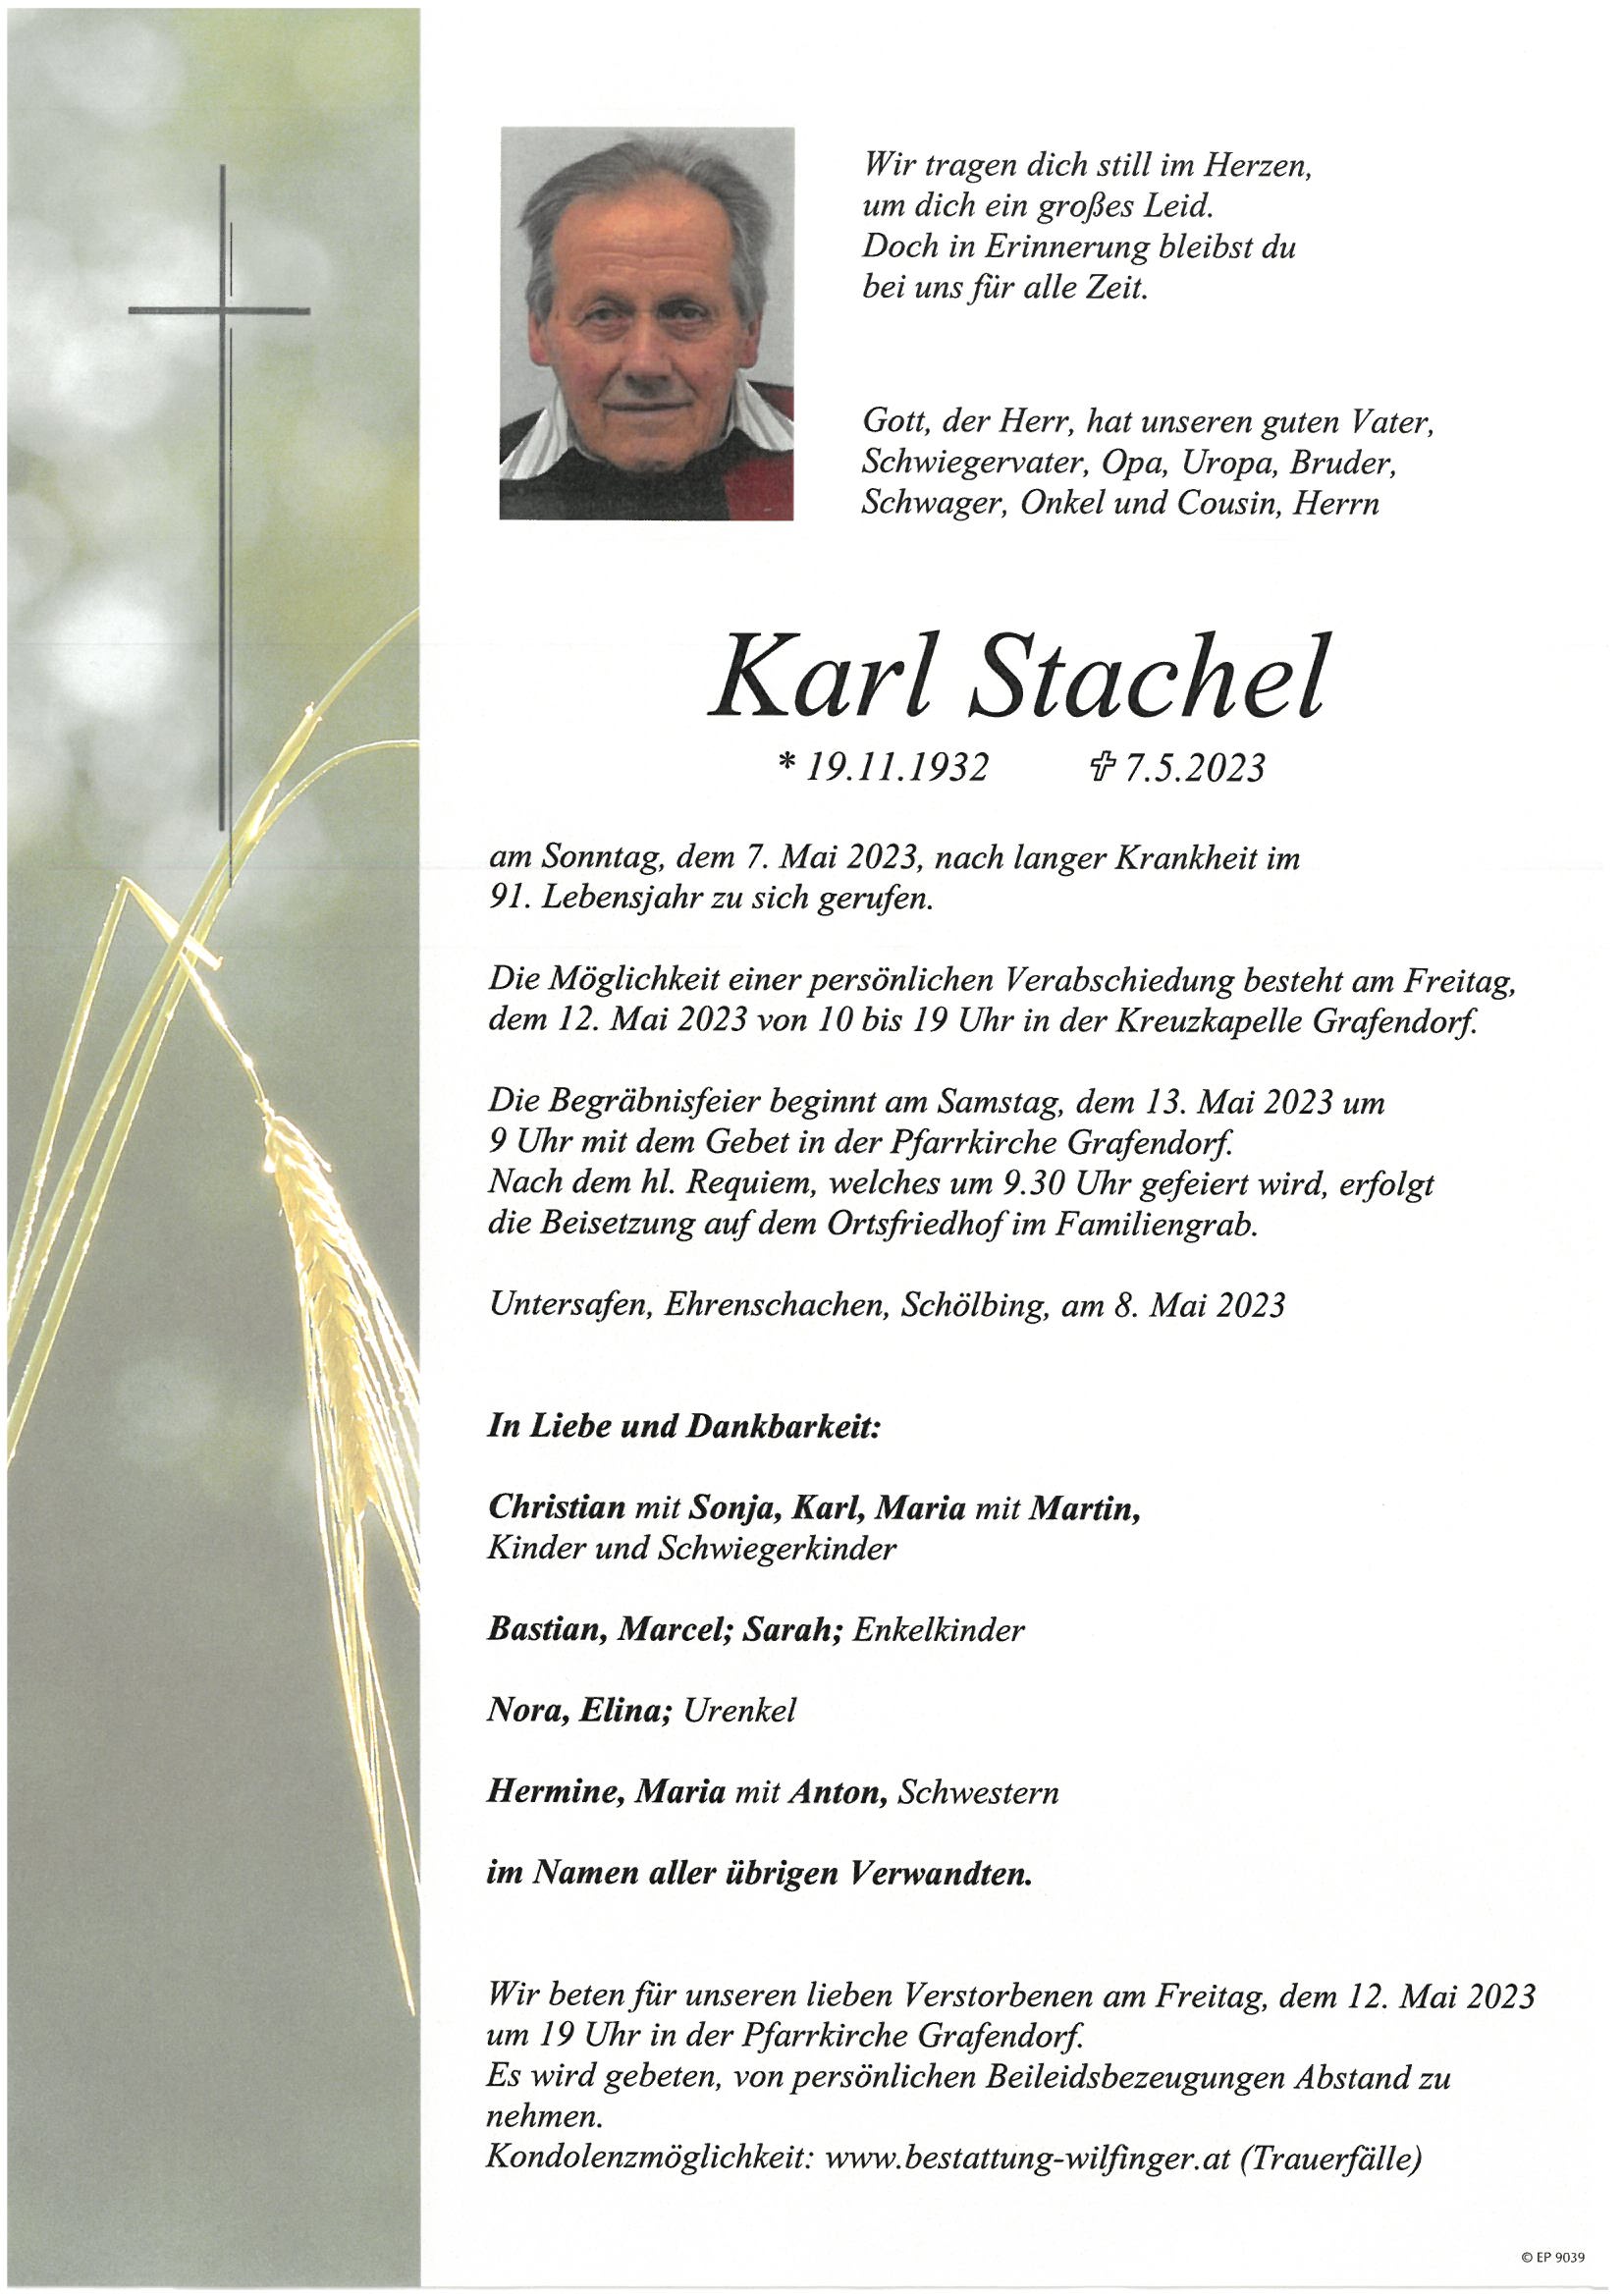 Karl Stachel, Untersafen